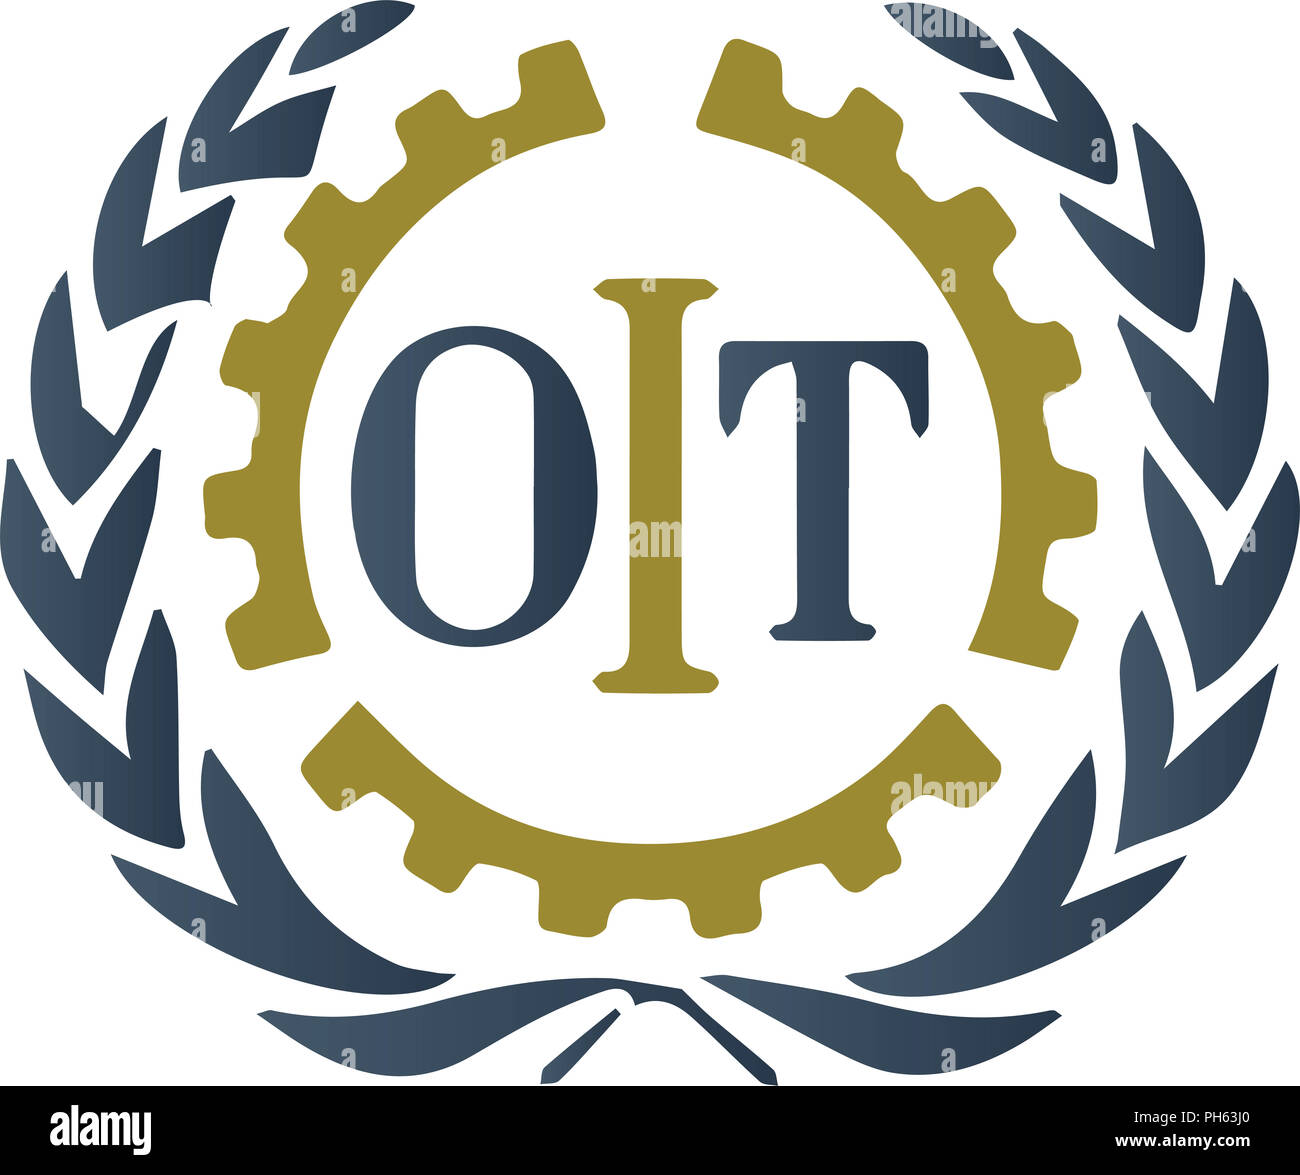 Questa è una illustrazione del logo dell'OIT con il mio stile grafico. Esso può essere molto piacevole se si vuole illustrare un tema geografico. Foto Stock